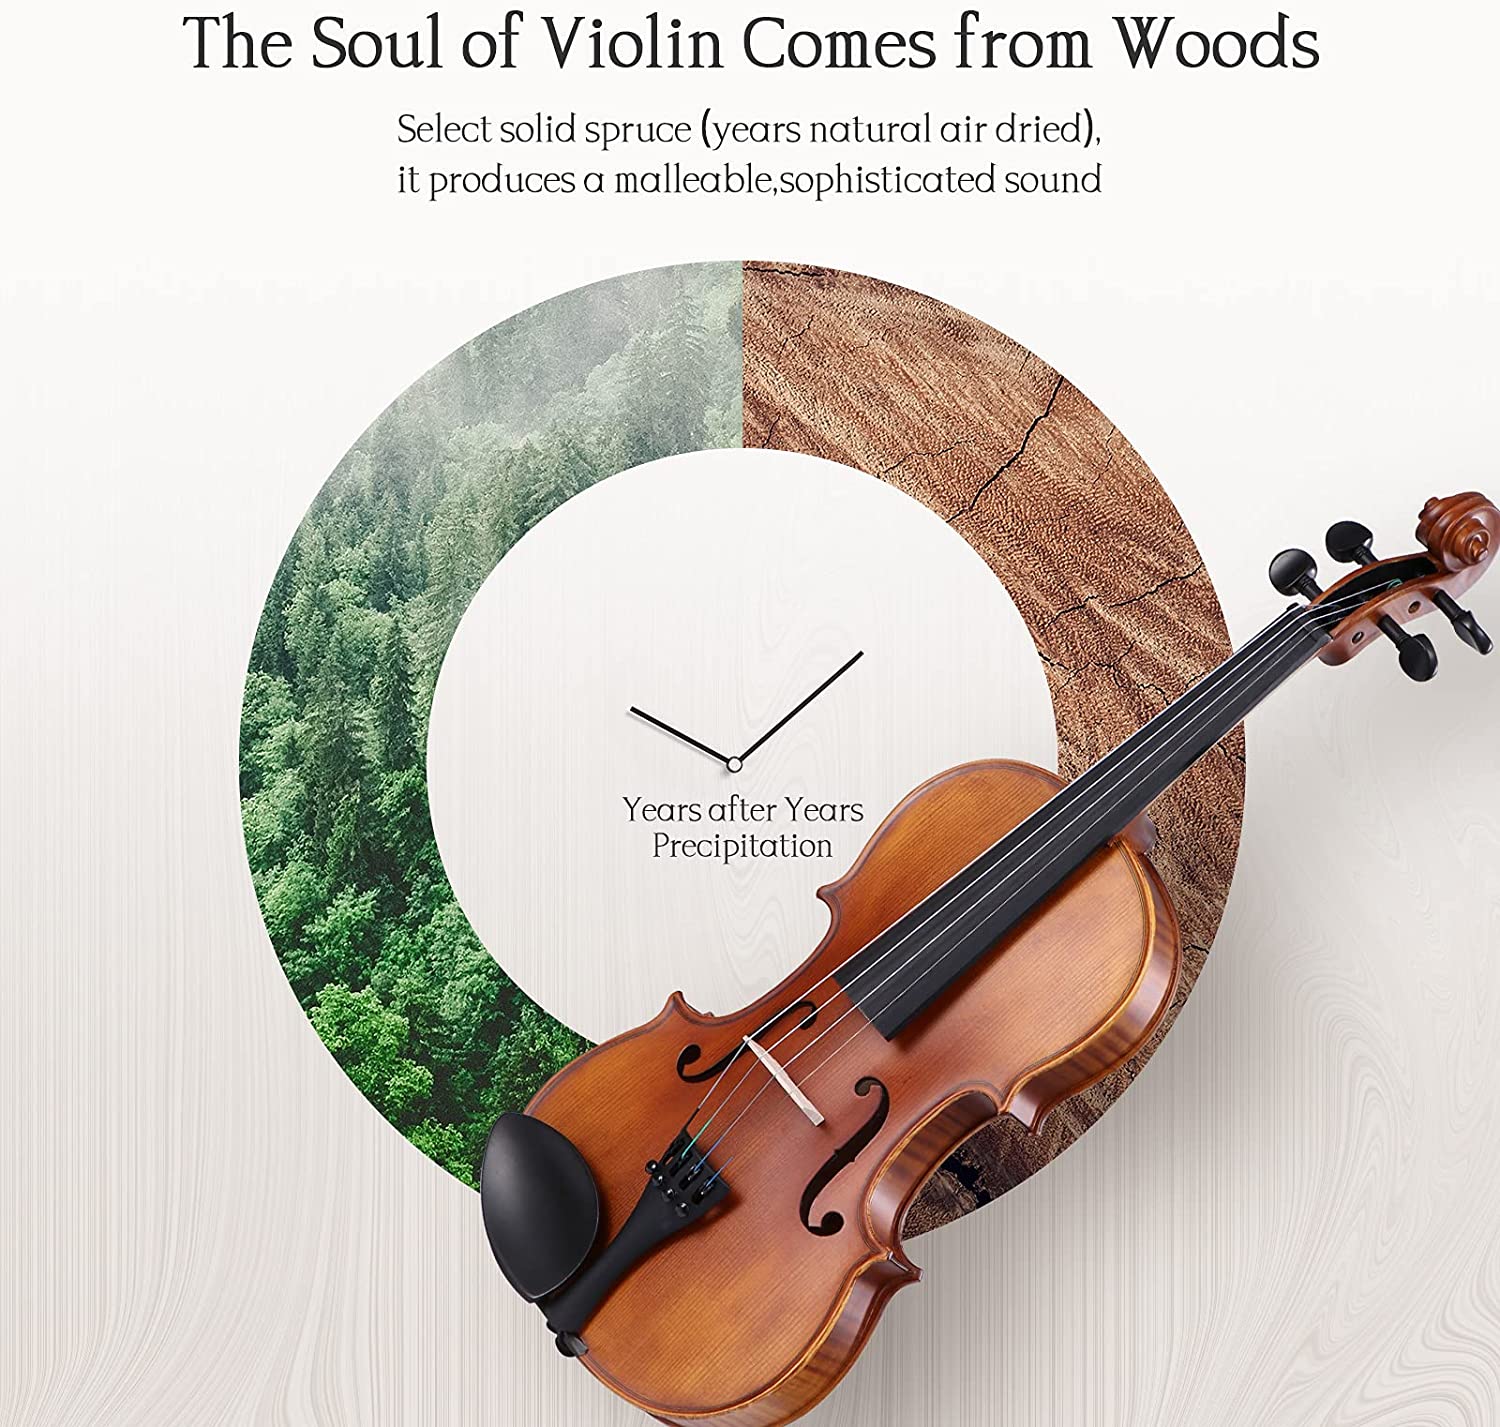 ویولن آکوستیک MIRIO Violin 4/4 Full Size- Acoustic Violin - ارسال ۱۰ الی ۱۵ روز کاری